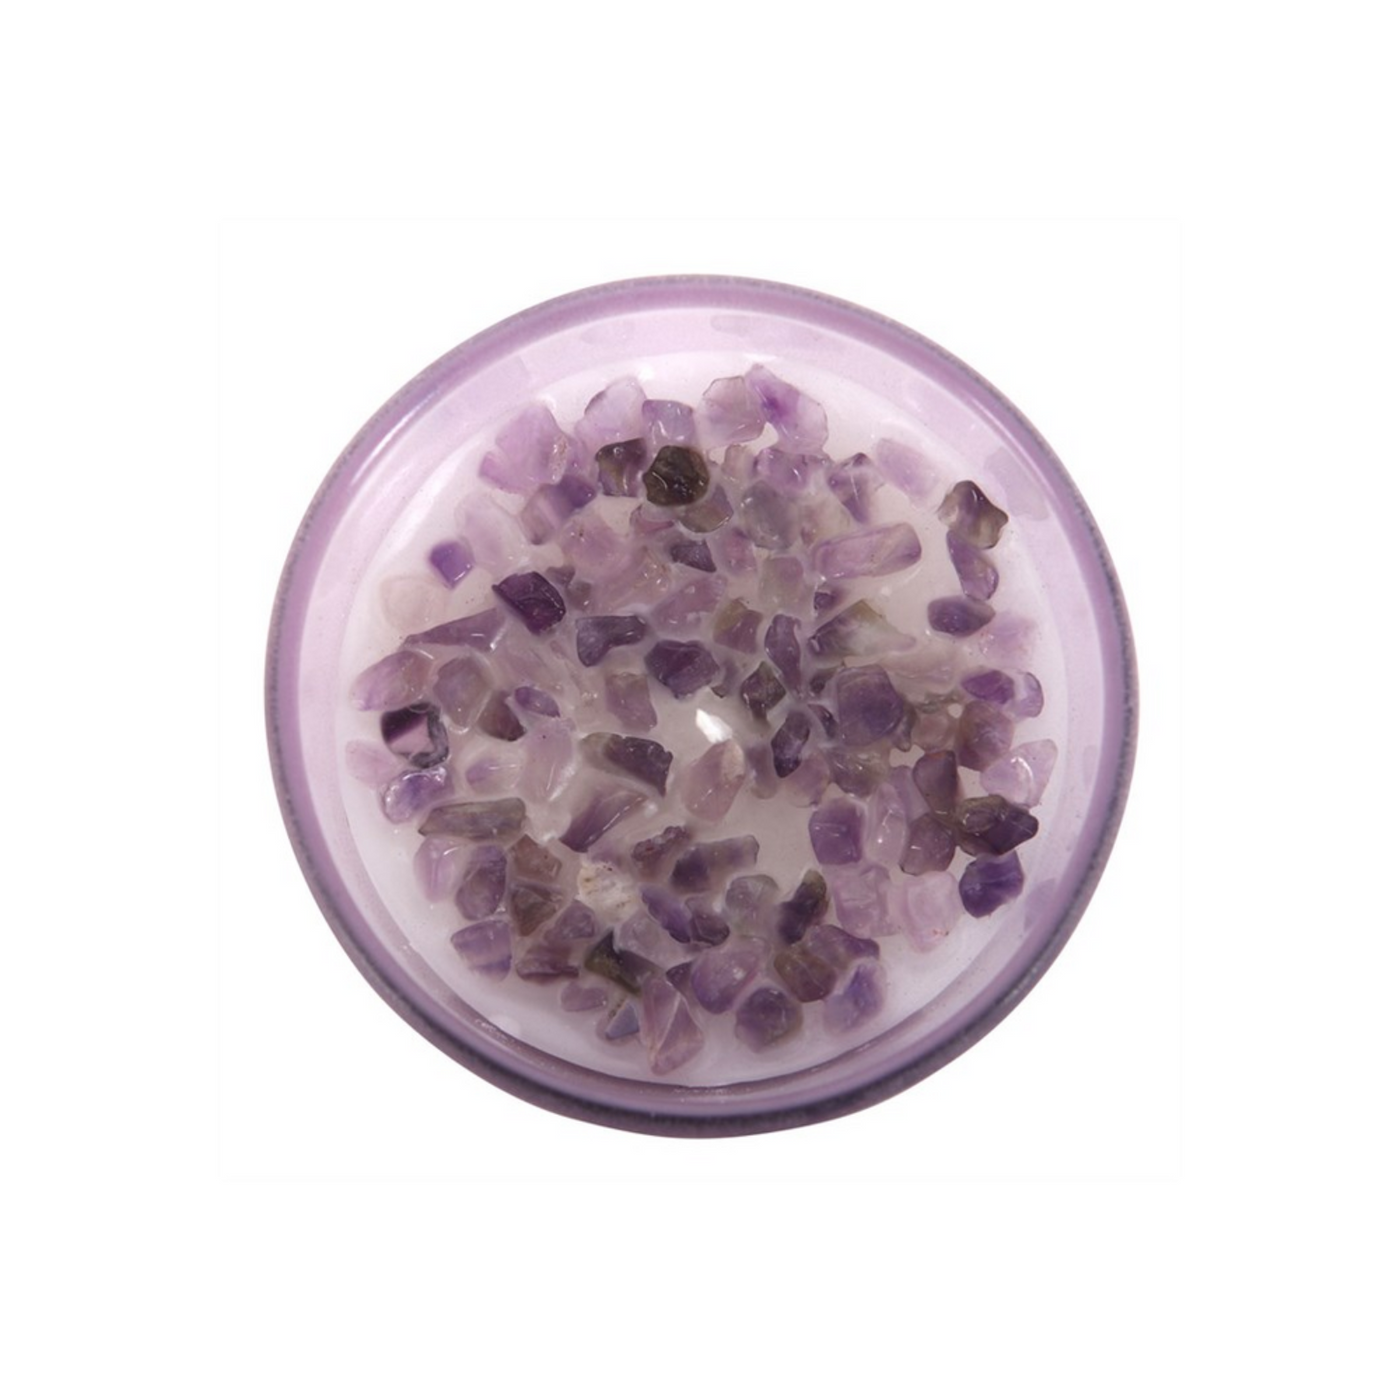 Abundance French Lavender Crystal Amethyst Gemstones Candle In Glass Jar.